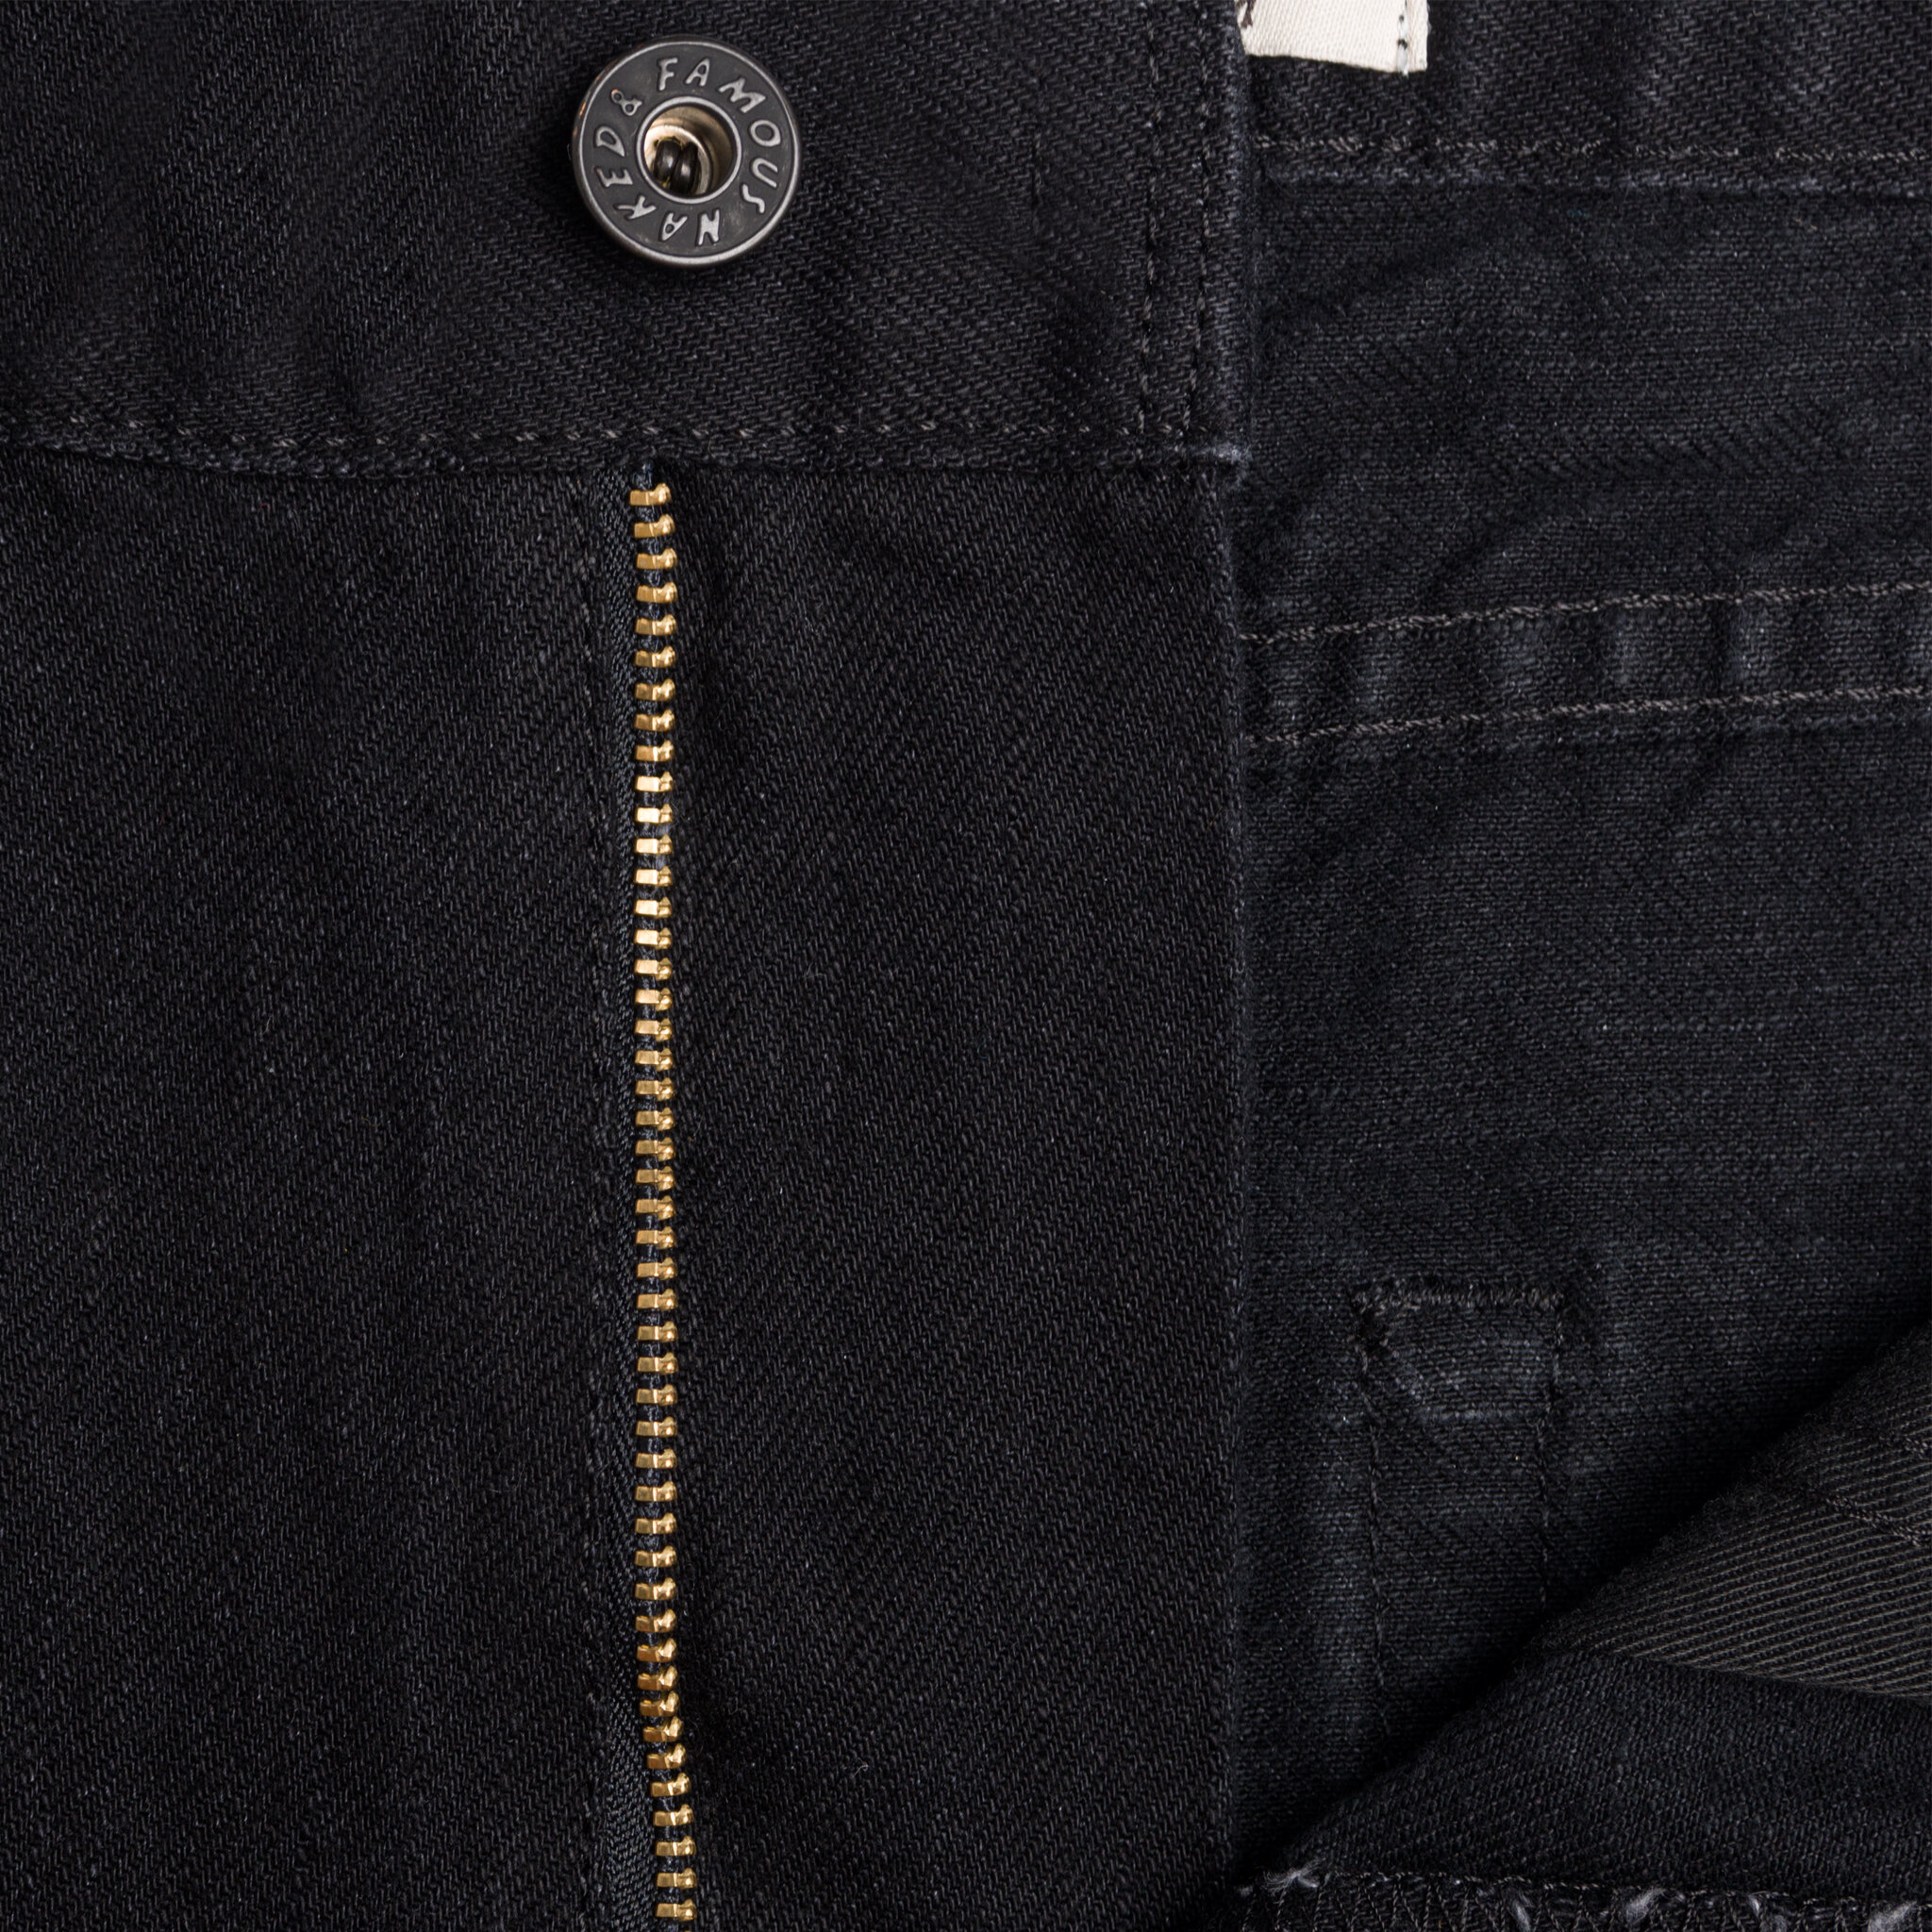  Women’s Solid Black Selvedge jeans - zip fly   